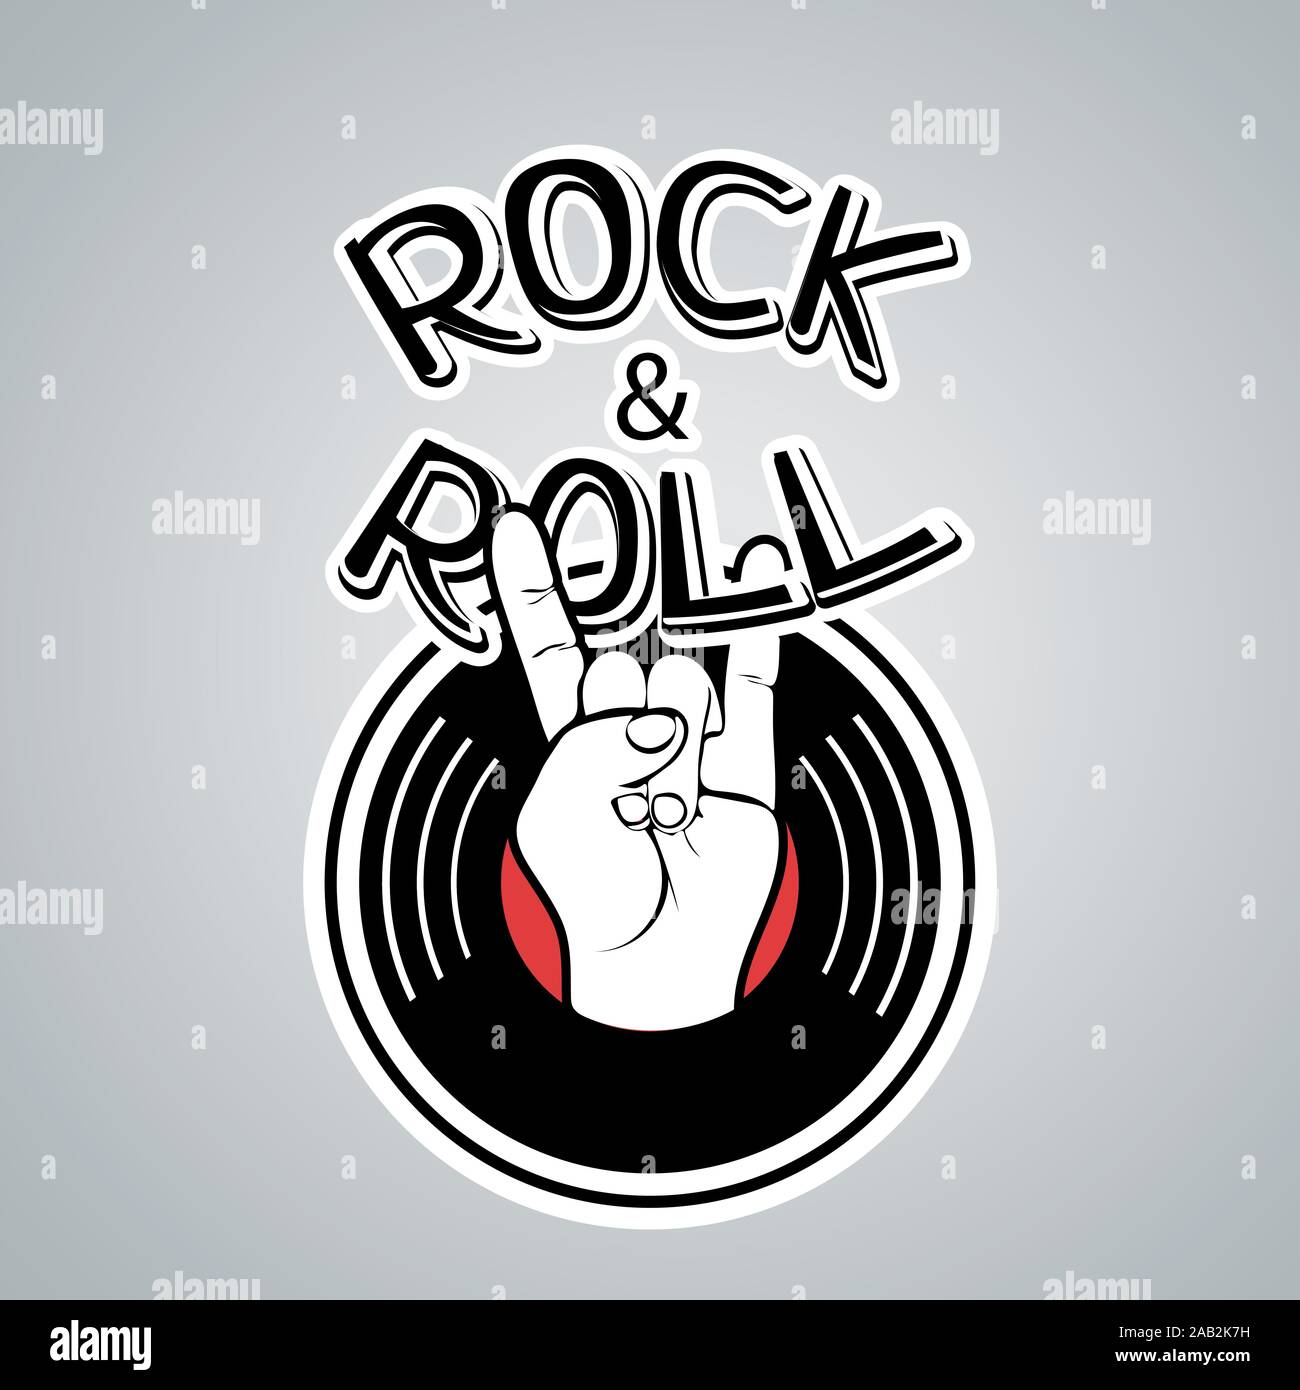 Rock and Roll vintage logo, icône musicale, cartoon dessin à la main. Noir, rouge, blanc, symbole main cornes disque vinyle et des lettres isolées sur g Illustration de Vecteur